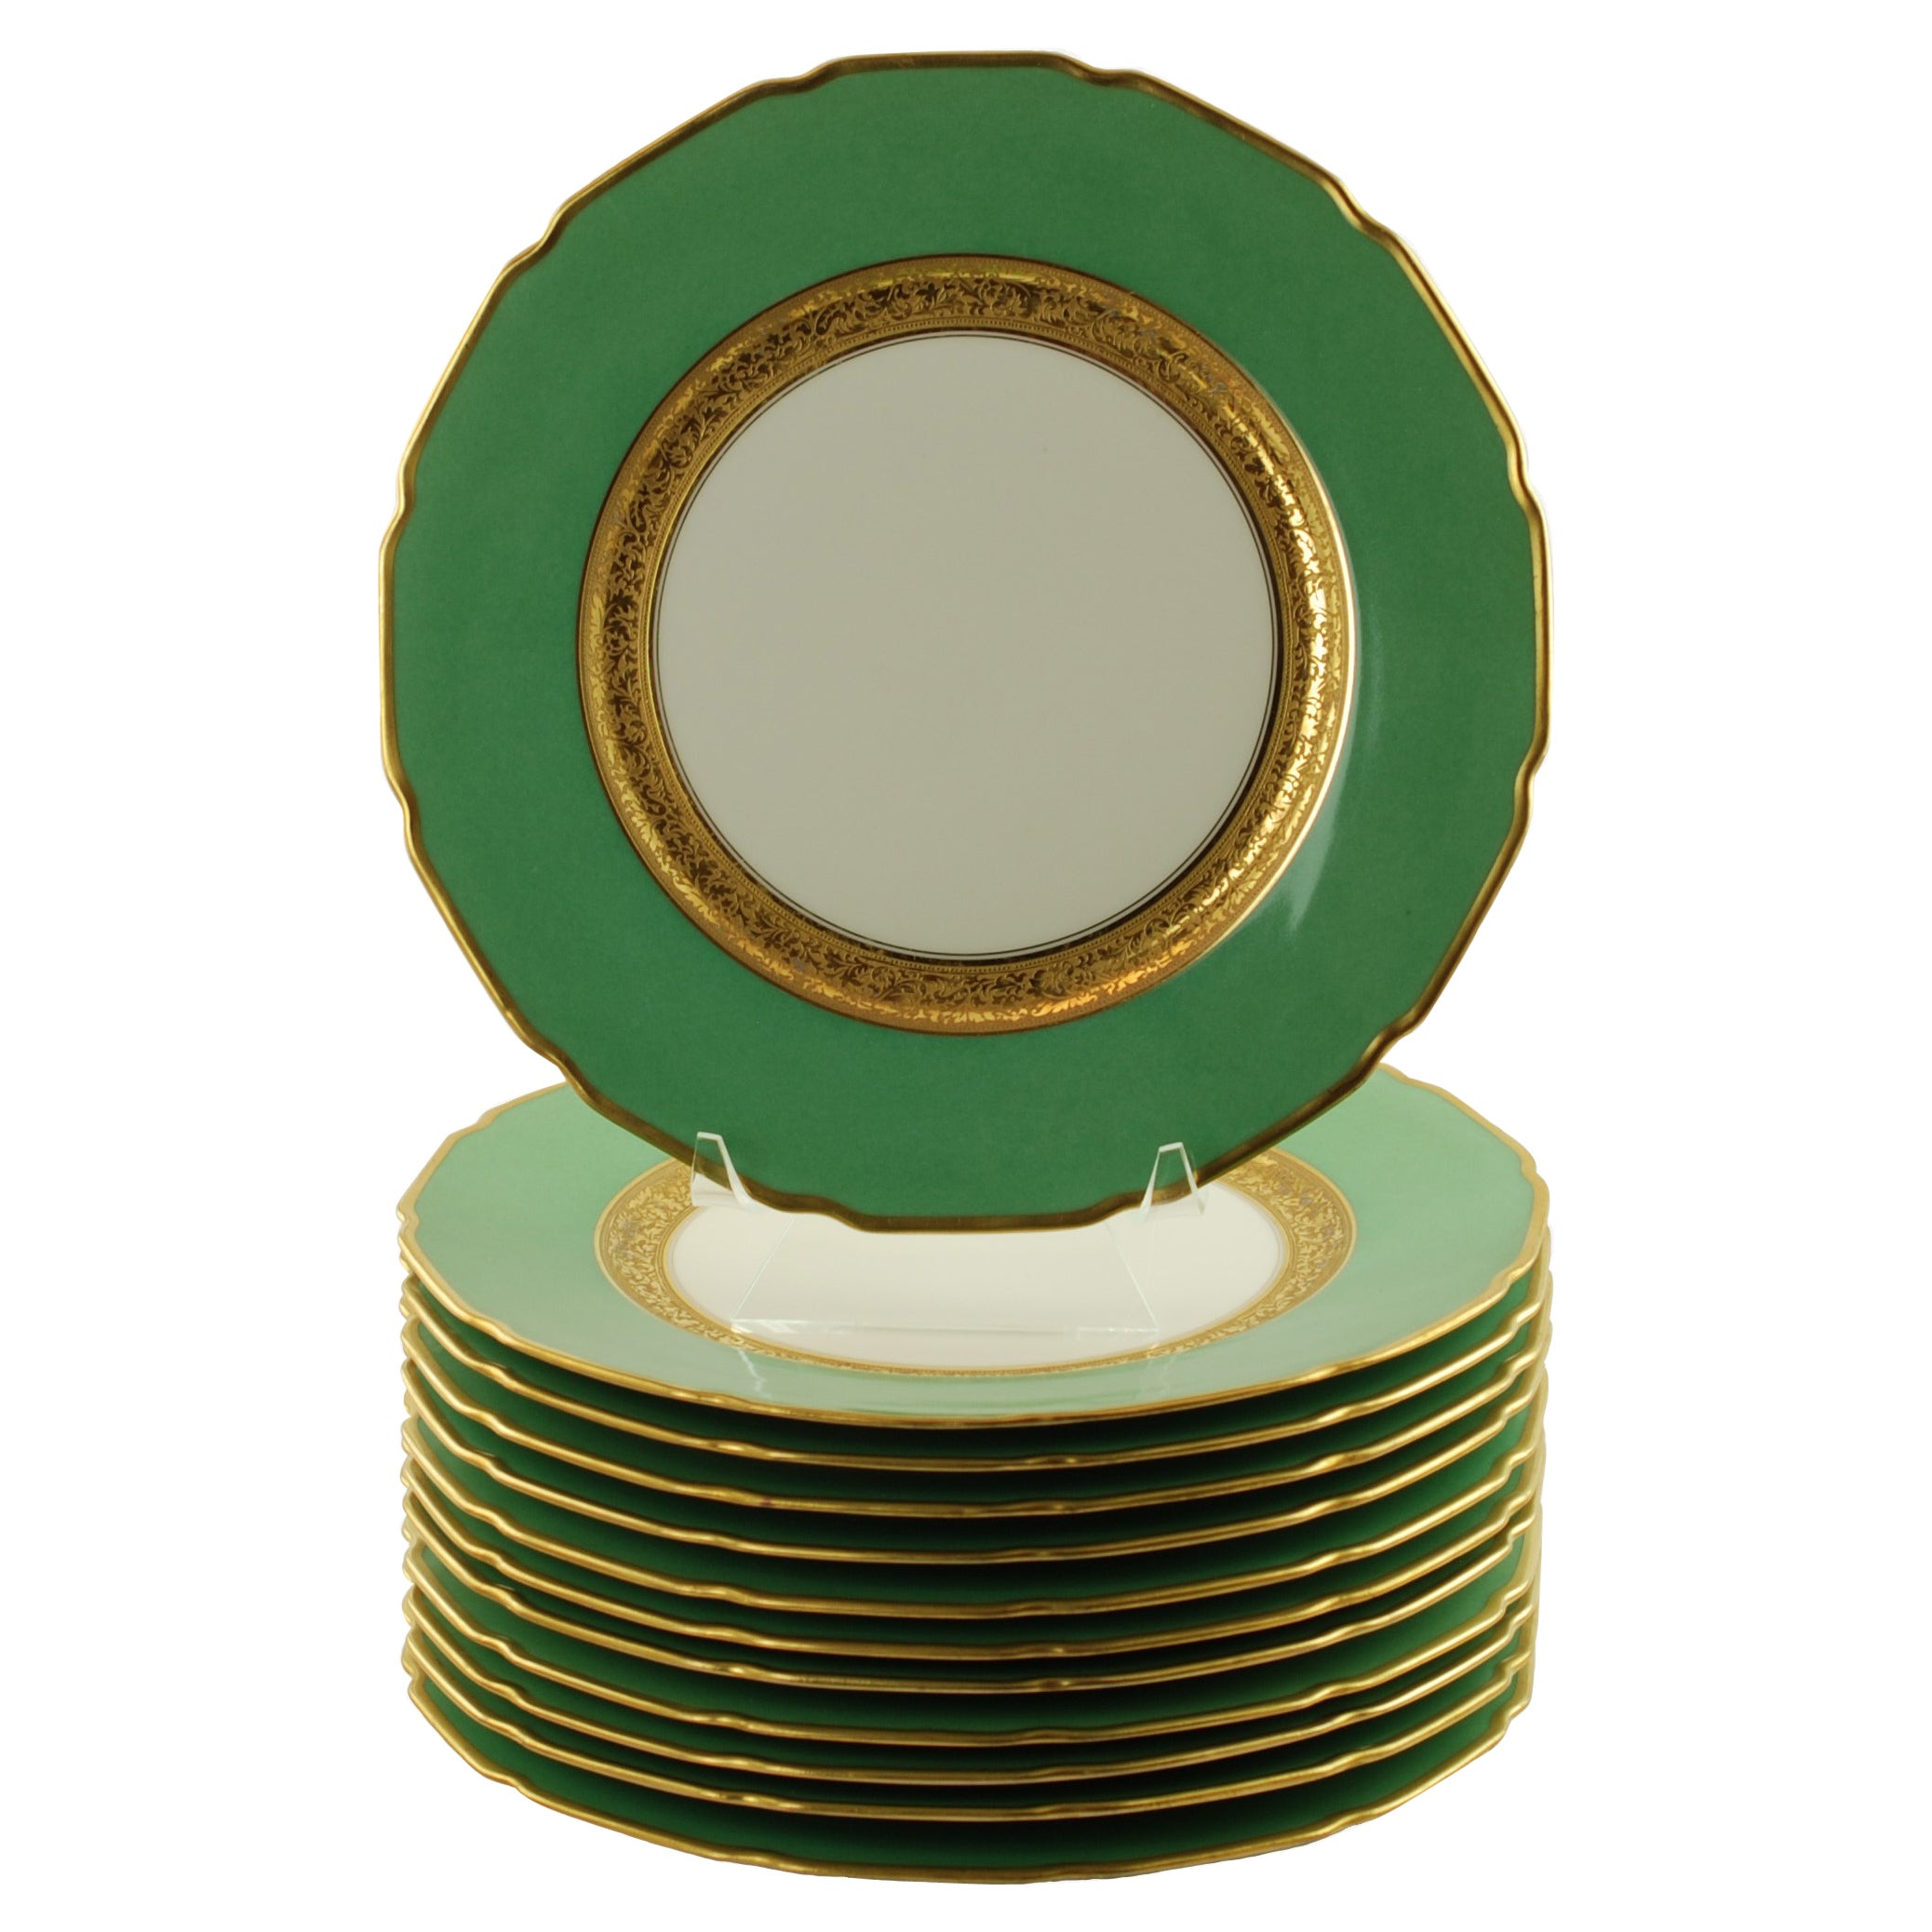 Antique Tressemanes & Vogt Porcelain Dinner Plates with Green Band and Gilt Trim